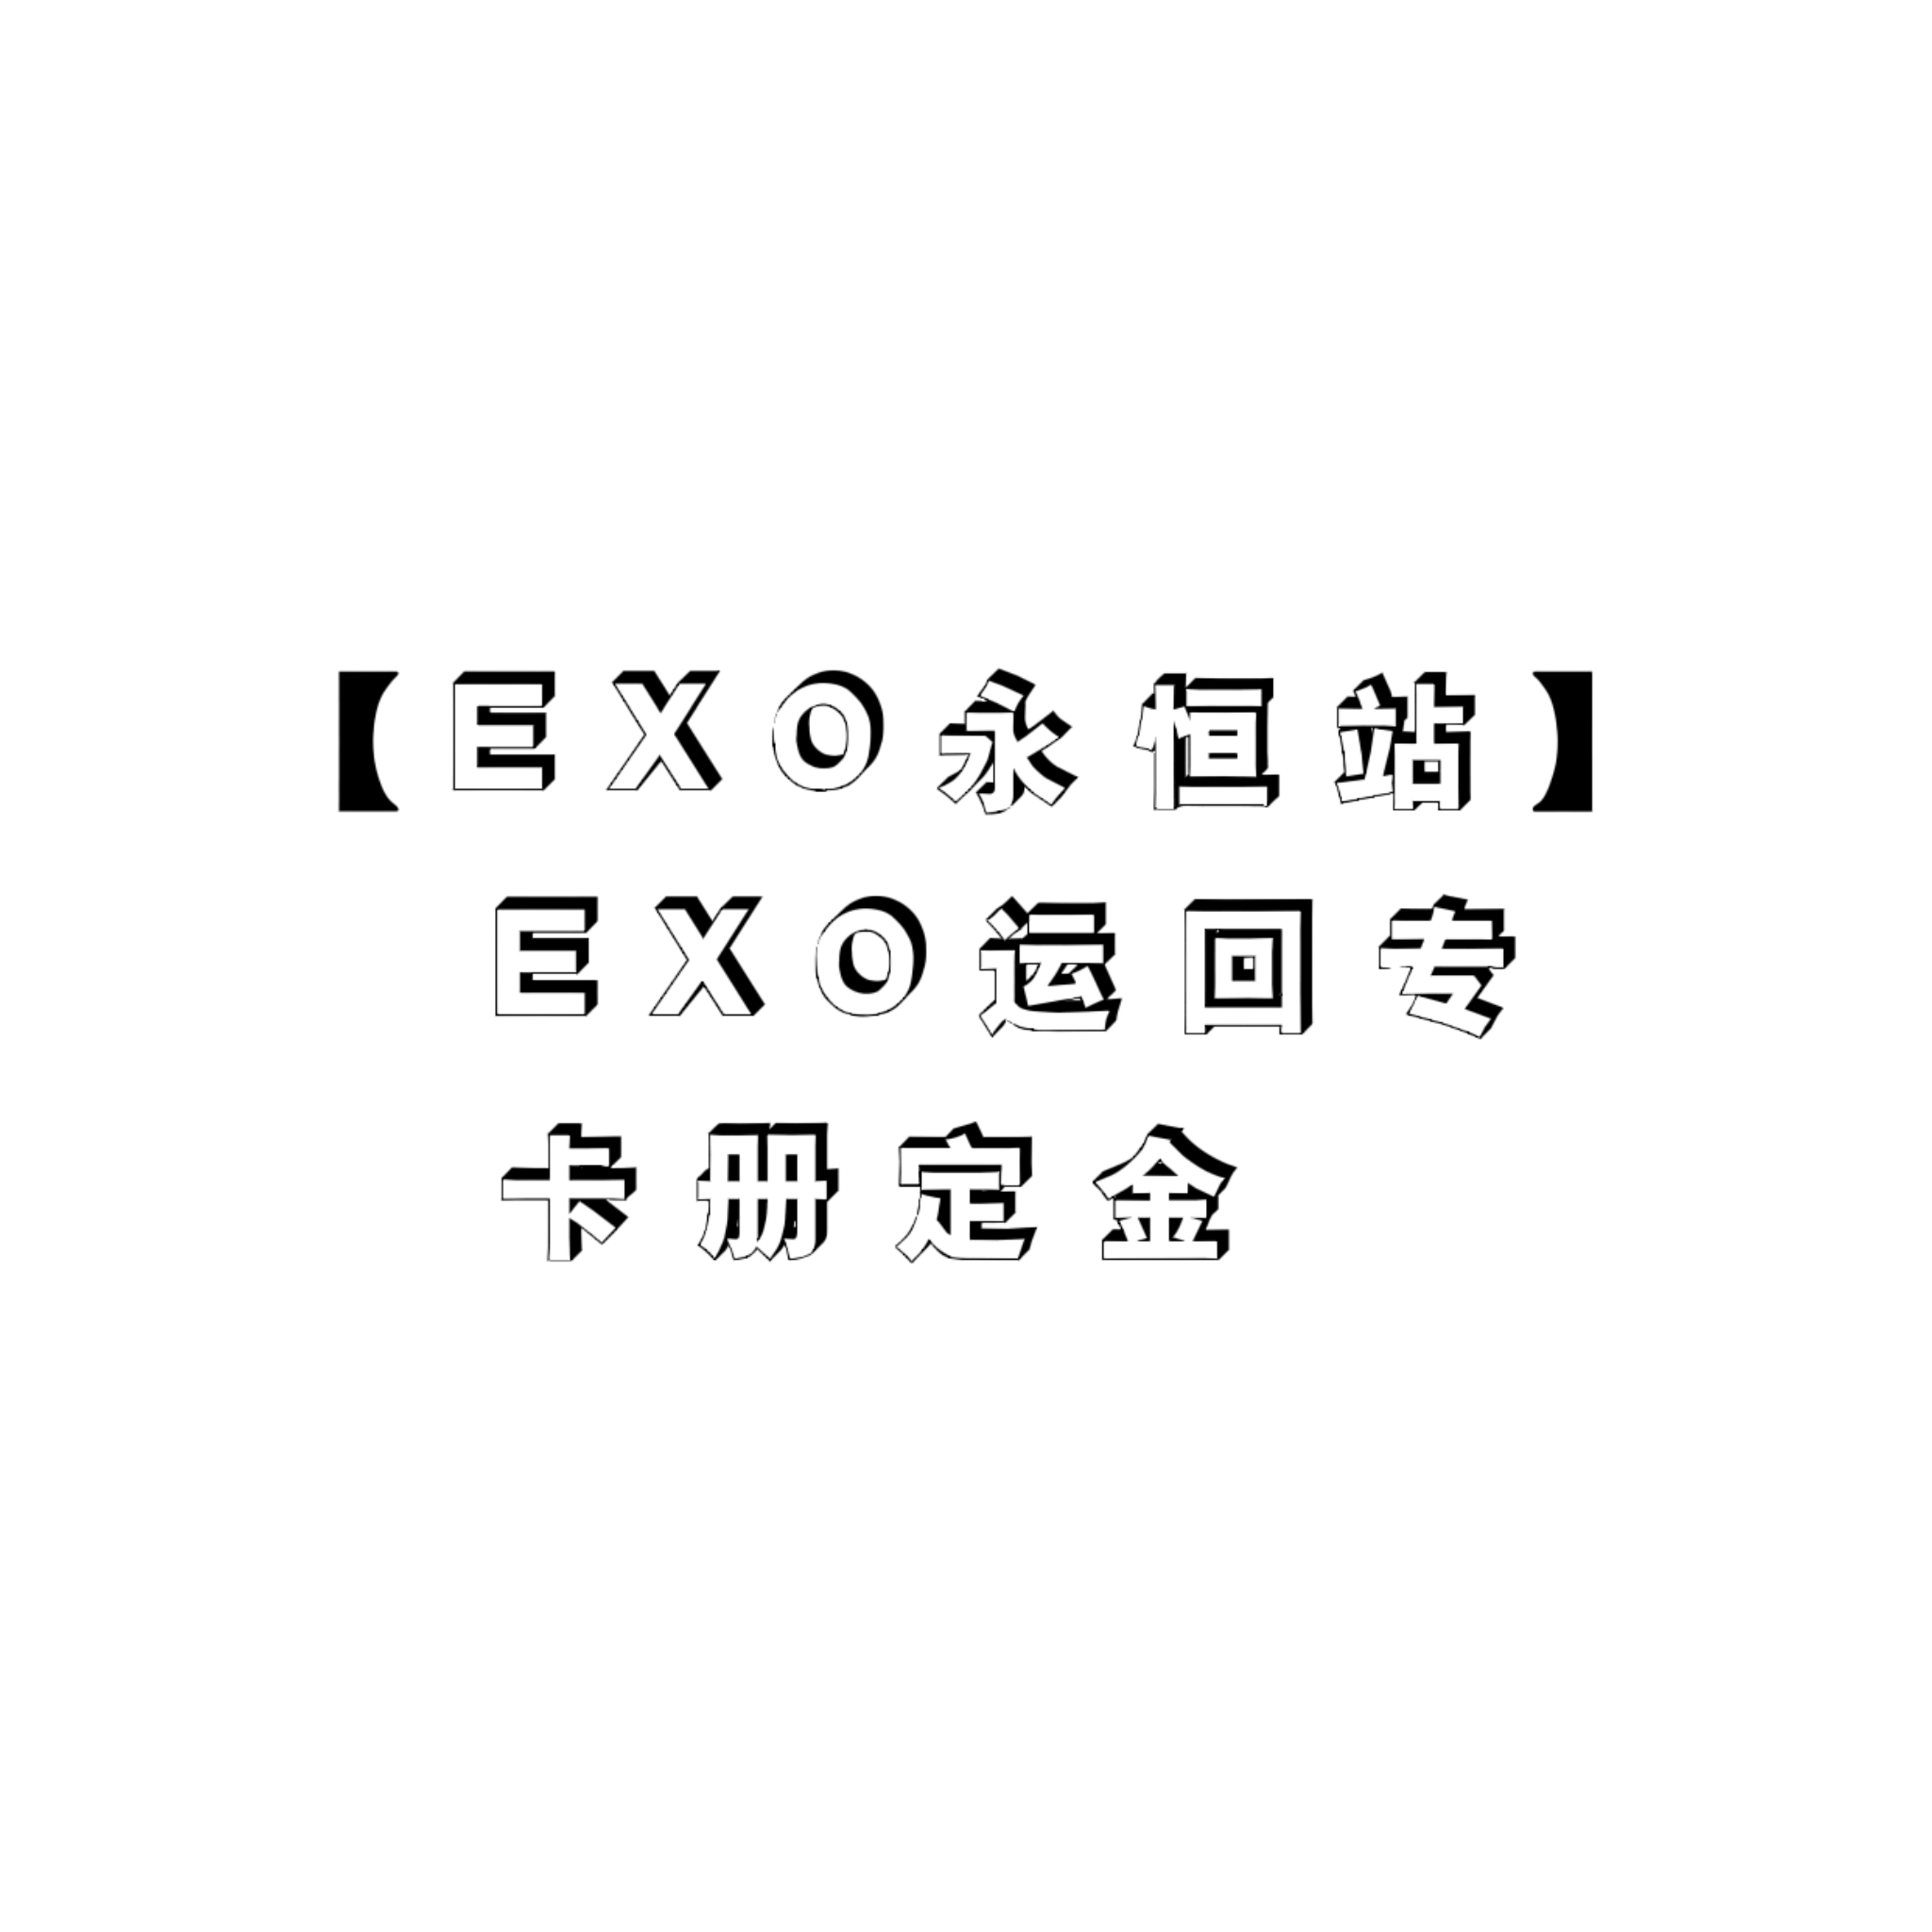 [定金 卡册] EXO运回特典专_永恒站